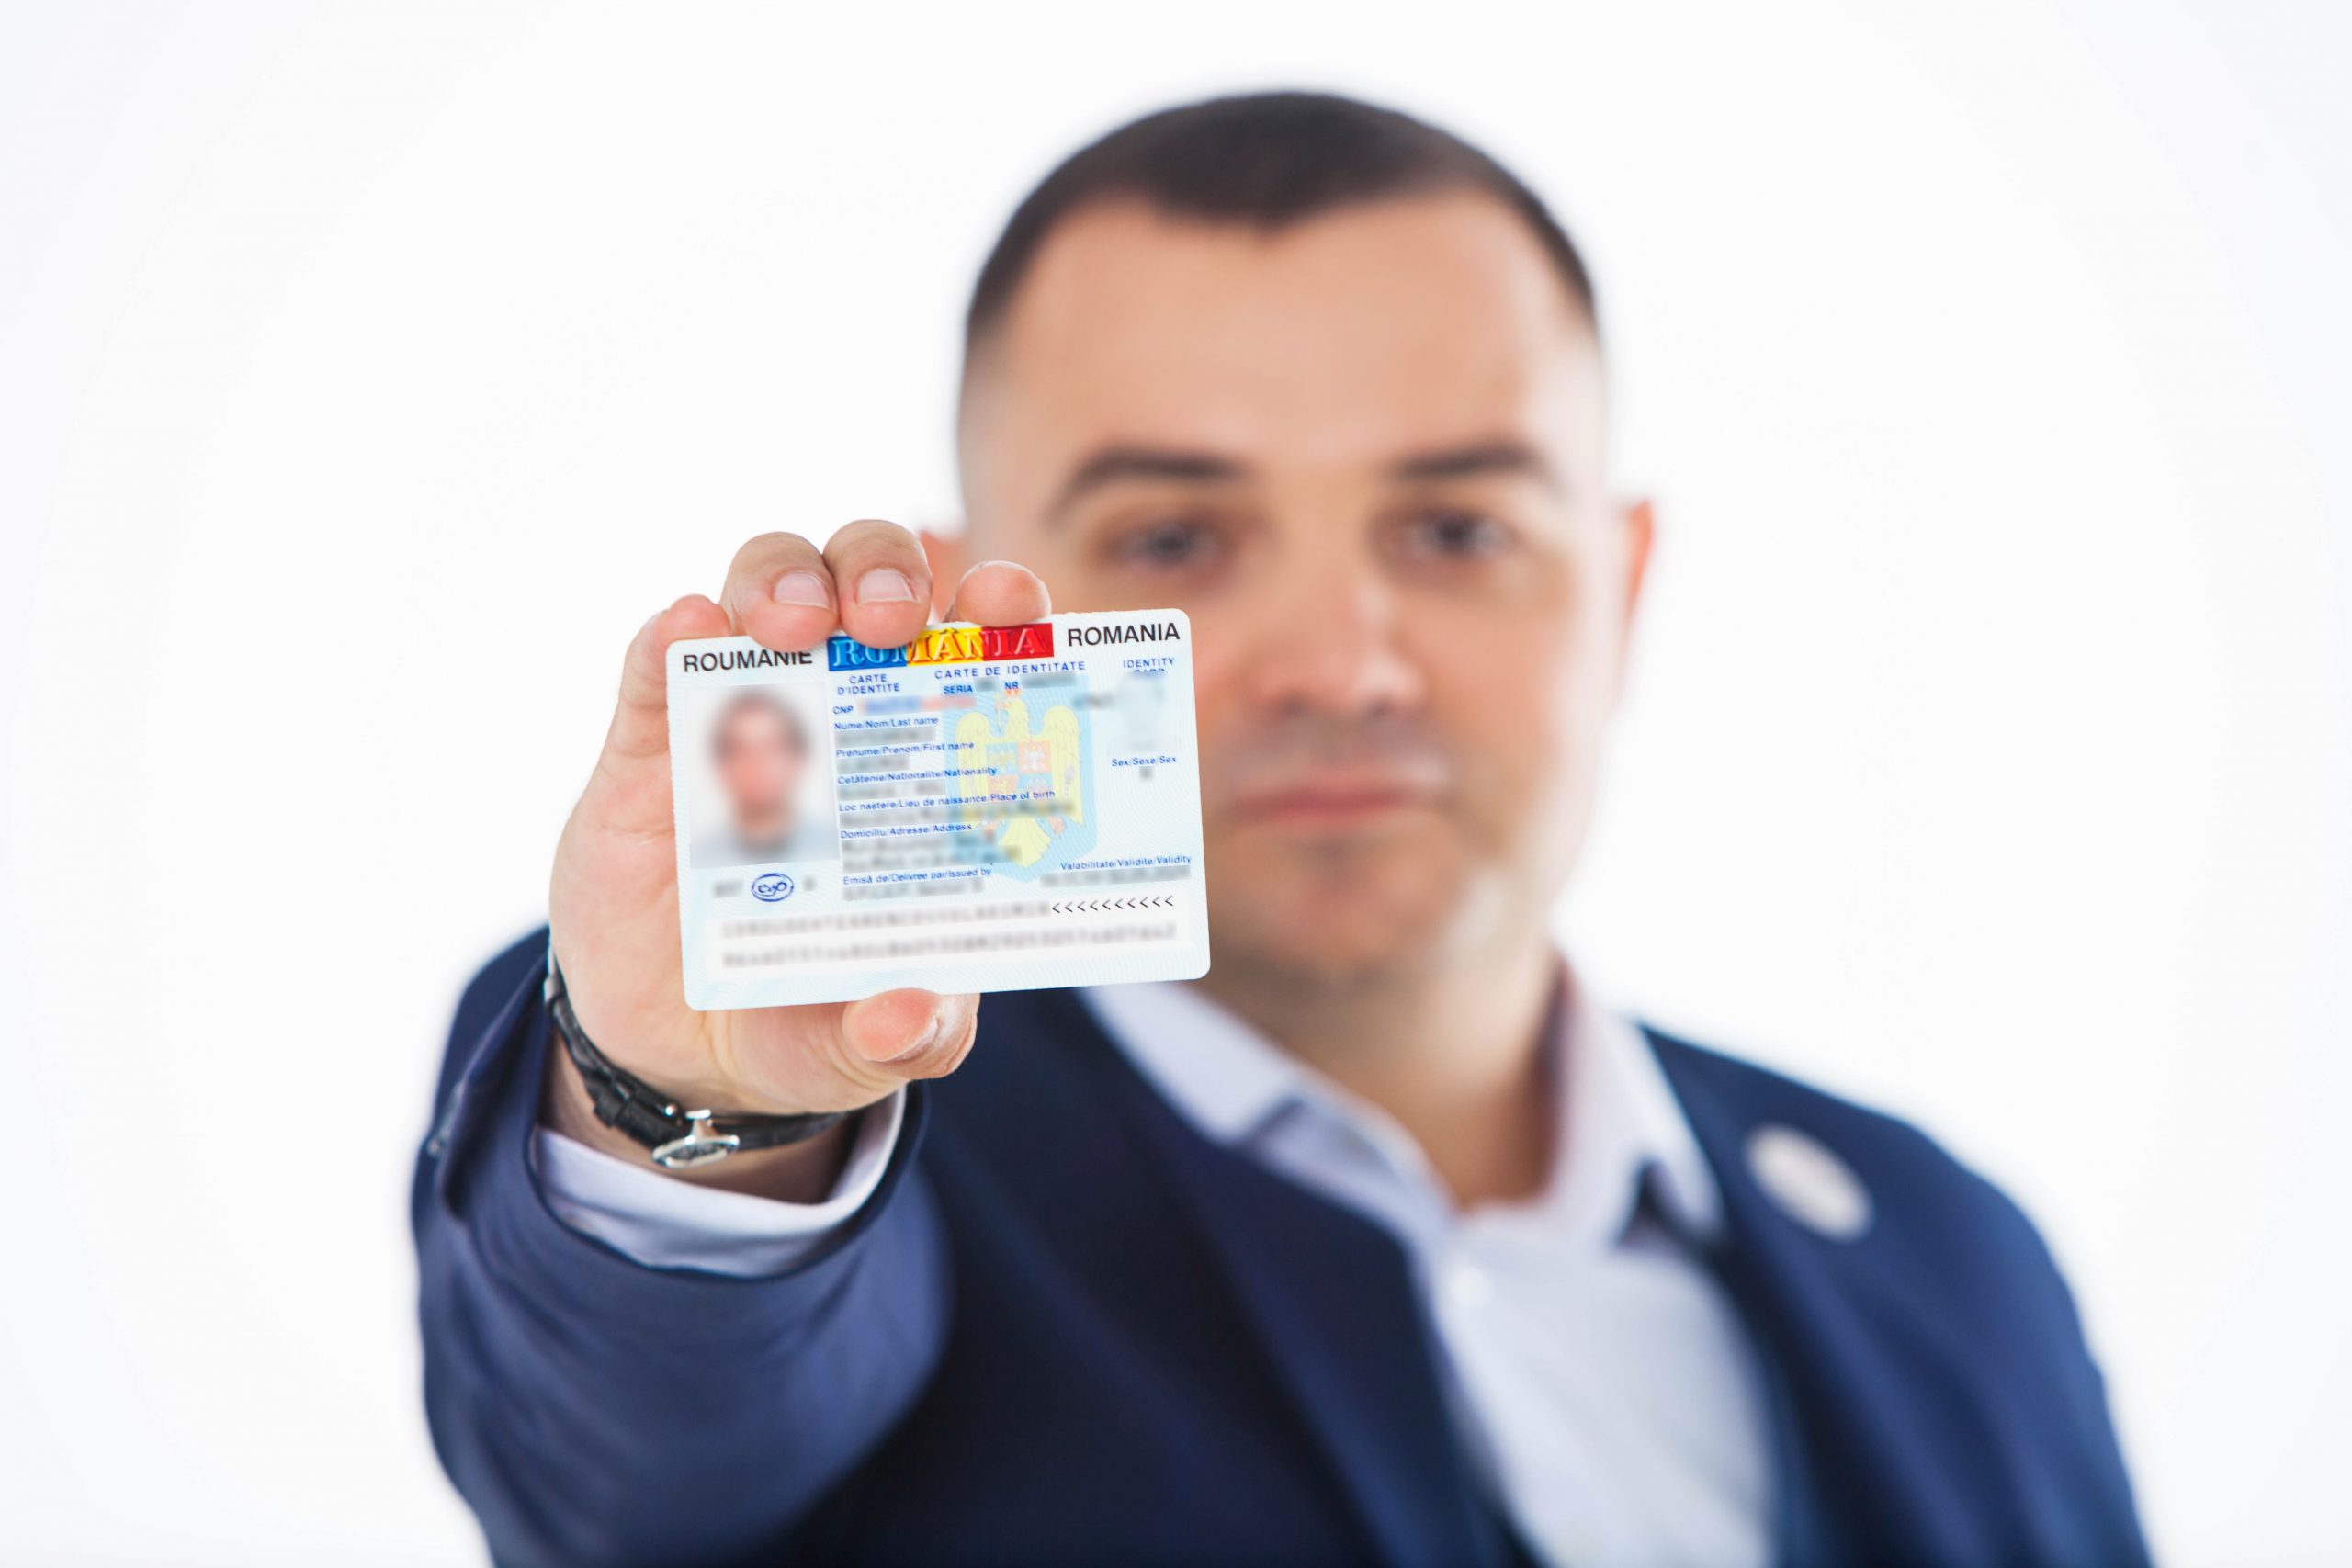 Va fi sau nu anulat buletinul de identitate românesc, dacă nu faci dovadă că locuiești la adresa de domiciliu? Află aici detalii